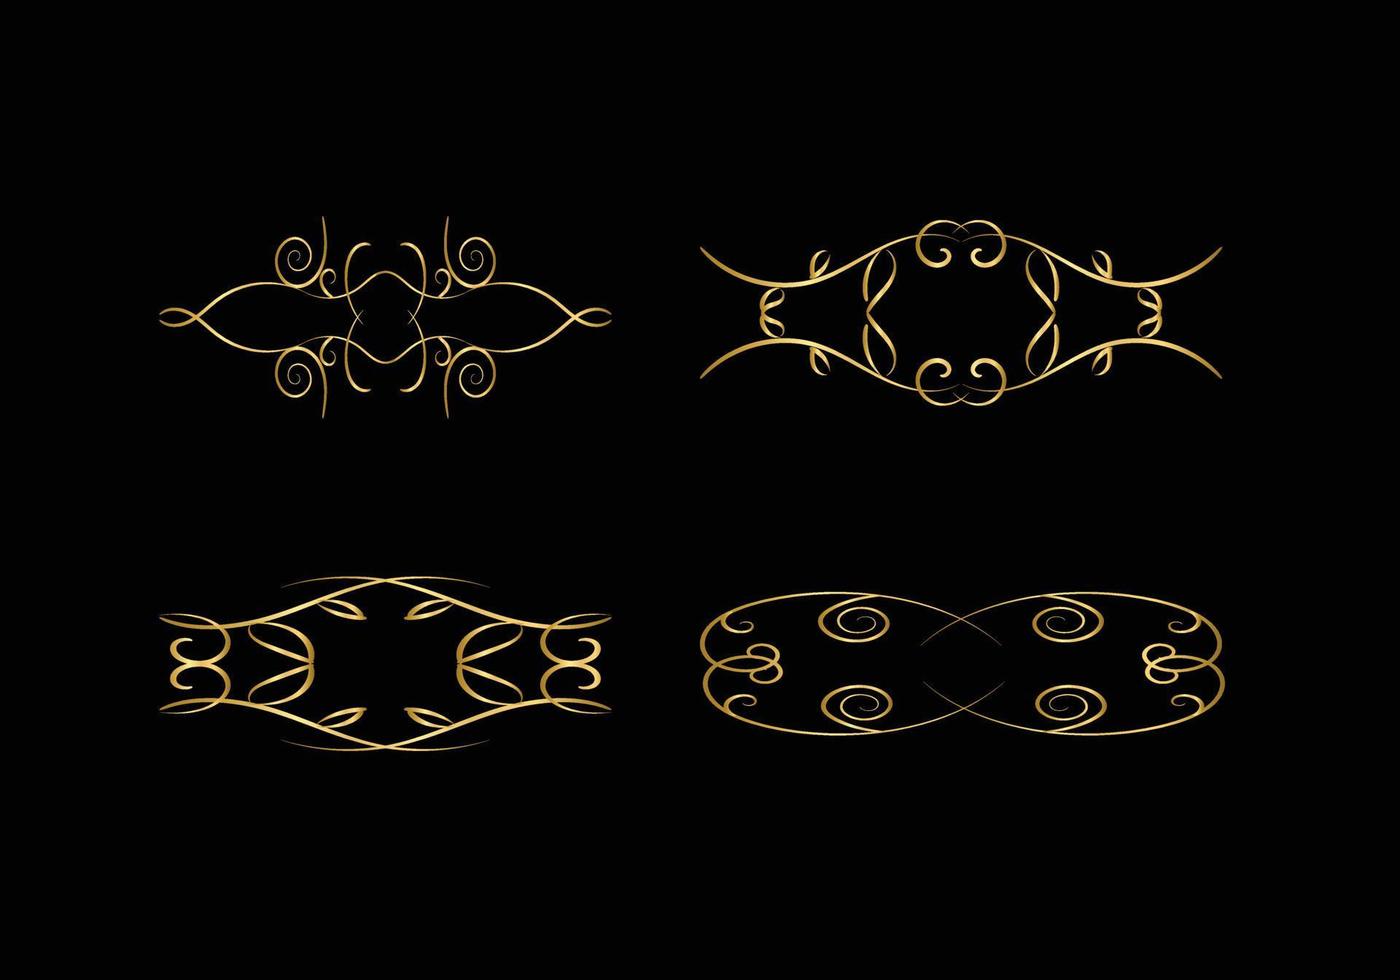 goldene dekorations- und ornamentelemente auf schwarzem hintergrund. florale Verzierung. vektor